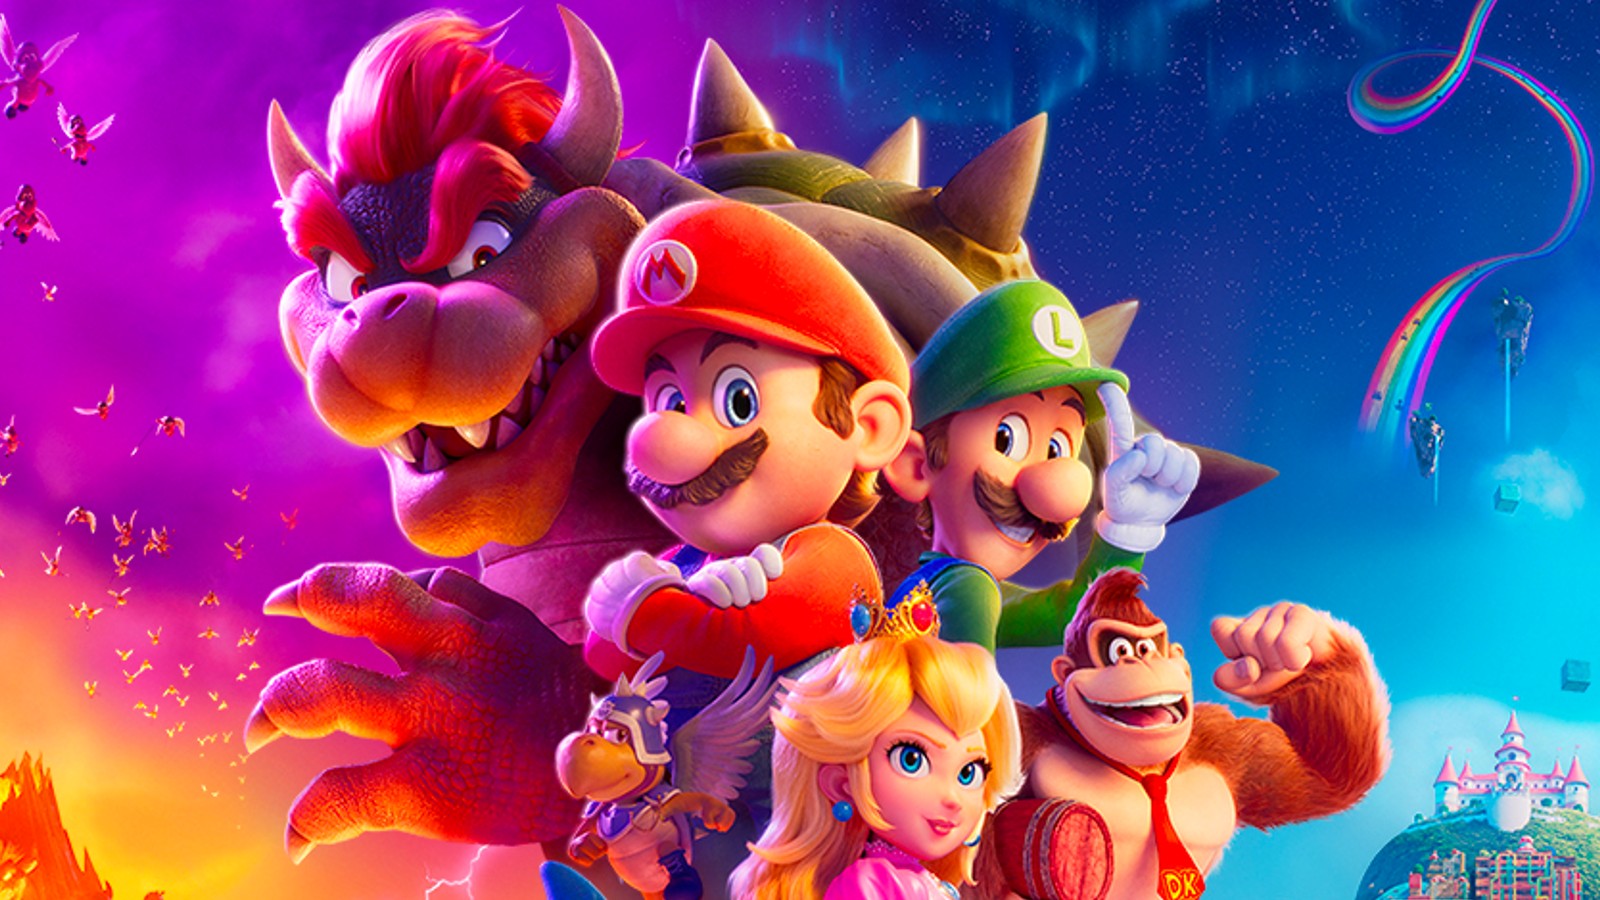 Das Poster für den Super Mario Bros -Film